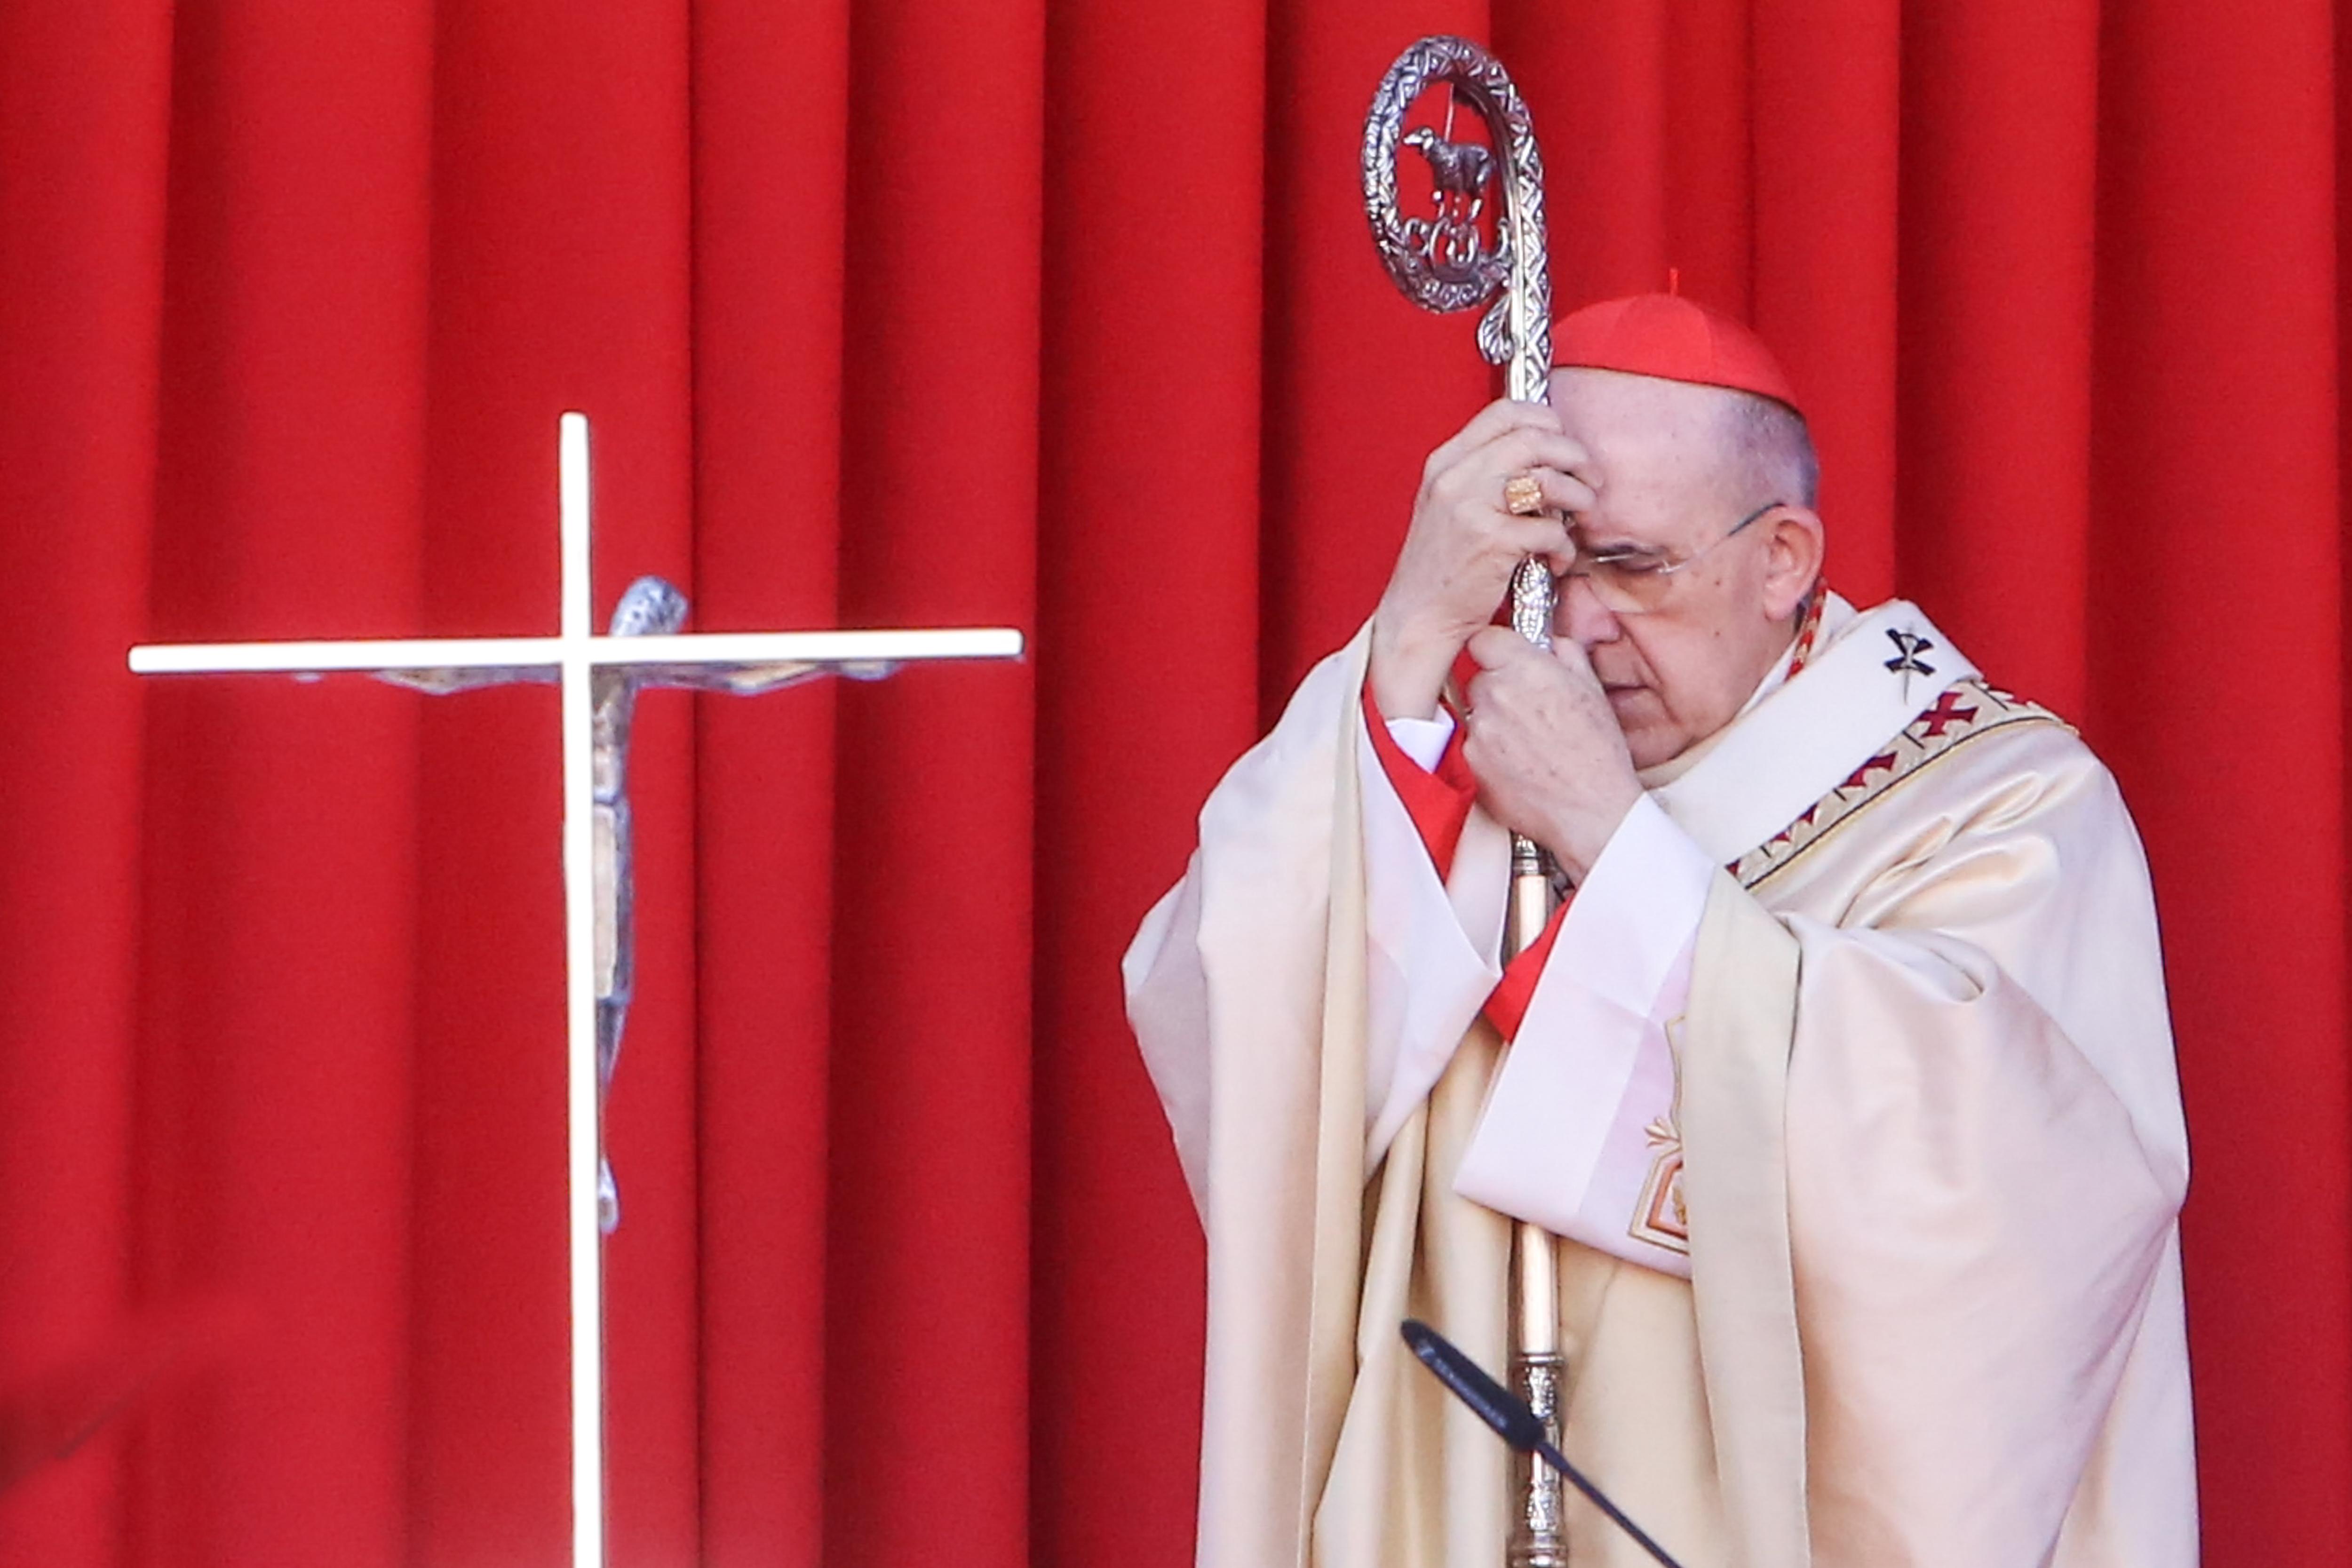 El cardenal Carlos Osoro Sierra, arzobispo de Madrid, en la misa solemne con motivo de la Festividad de Nuestra Señora de la Almudena en la capital